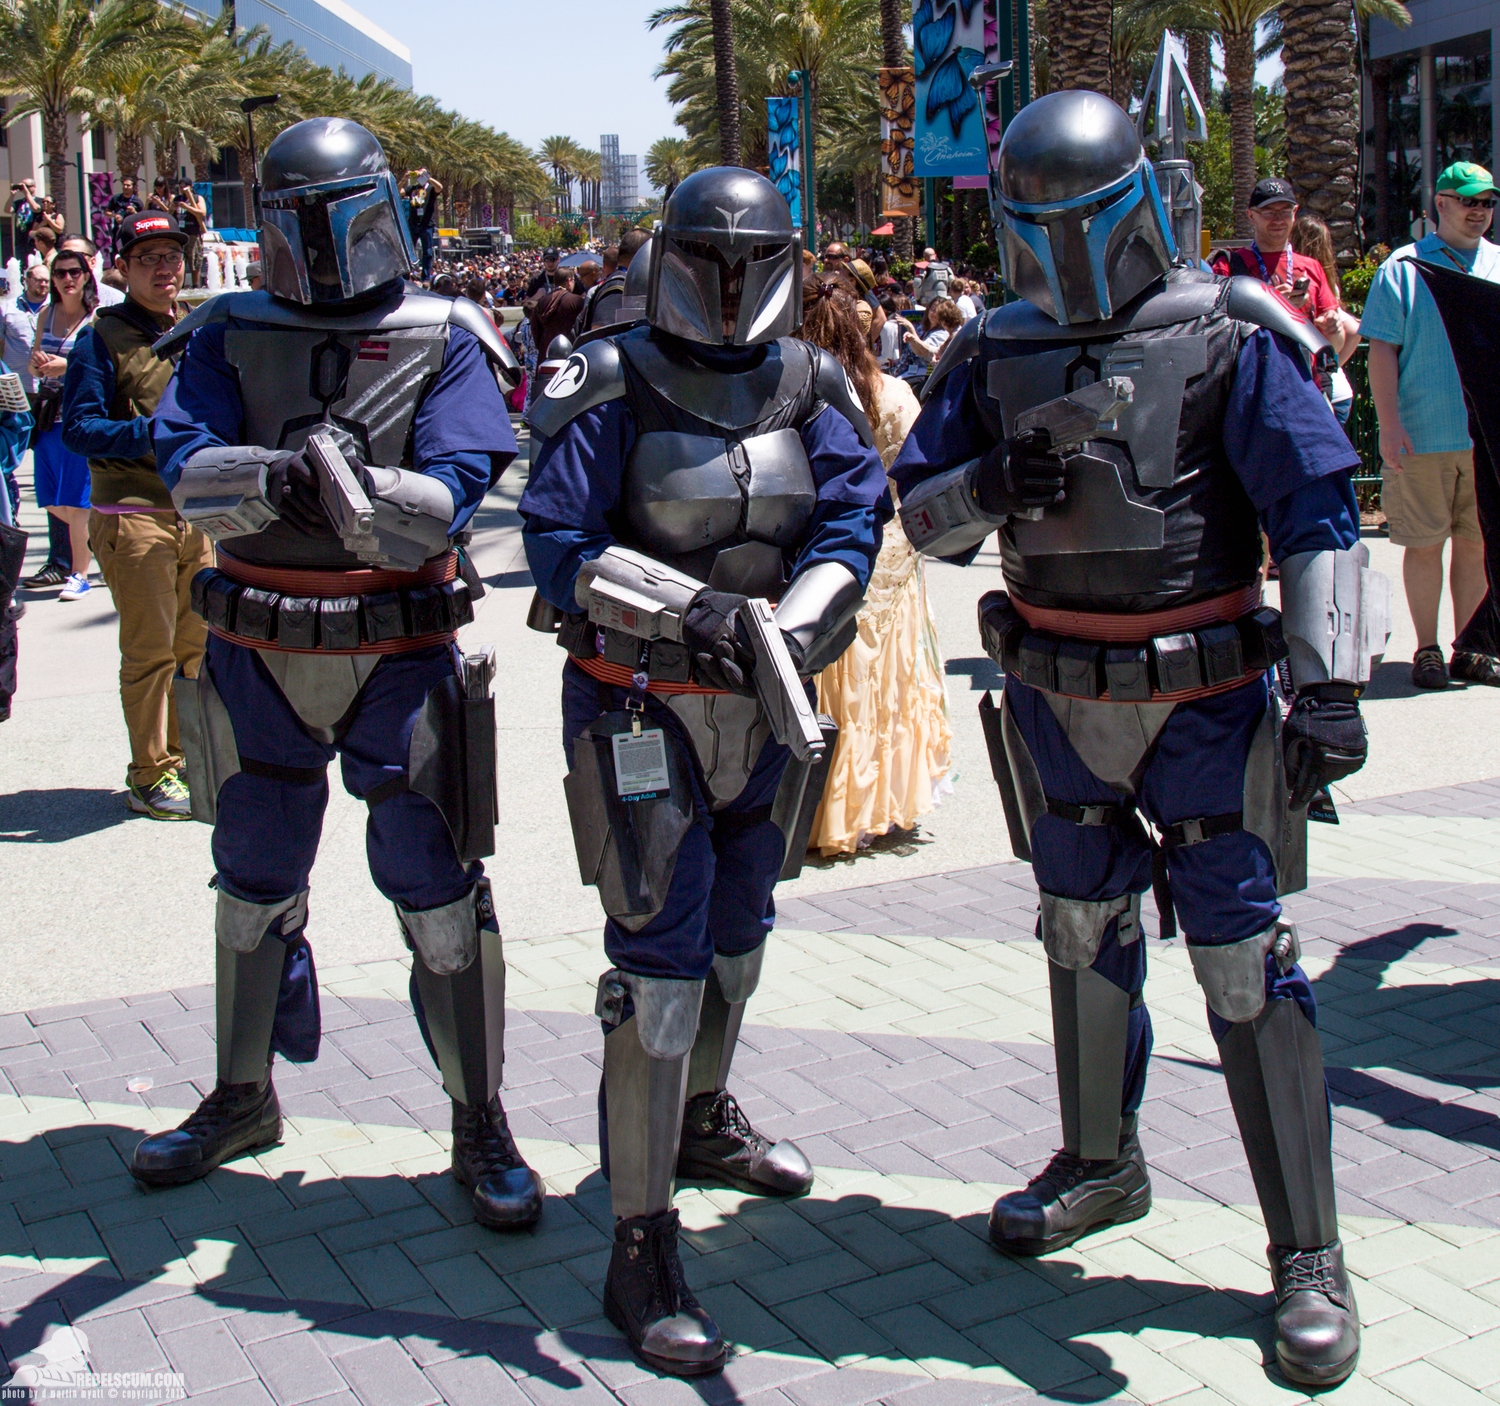 Star-Wars-Celebration-Anaheim-2015-Cosplay-costumes-041.jpg